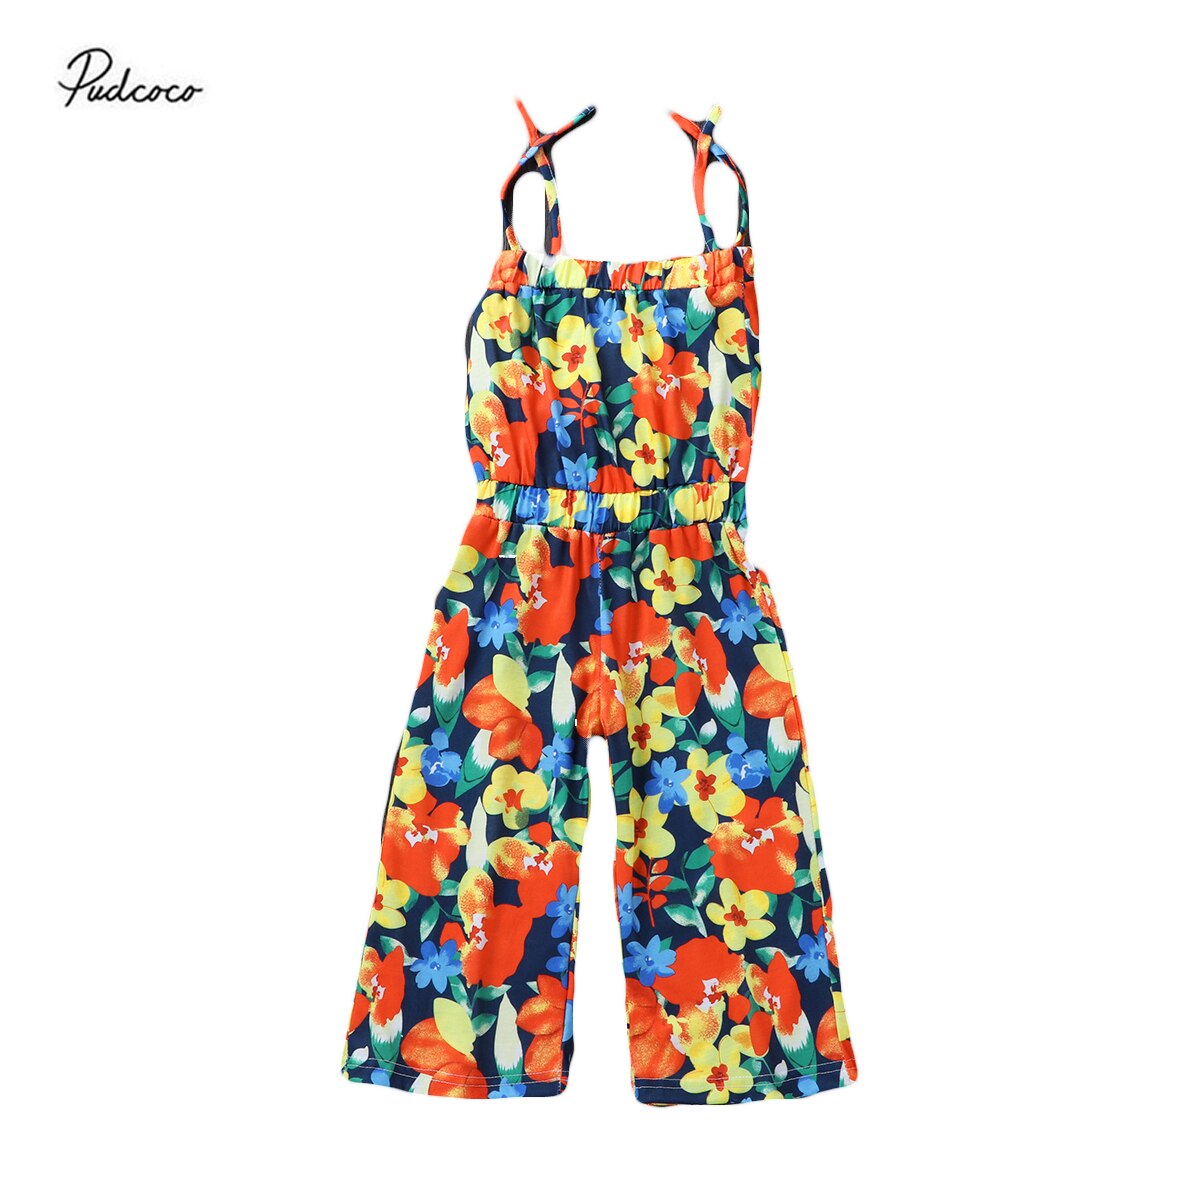 Pudcoco Baby Meisjes Strapless Jumpsuit Een Stuk Kleurrijke Bloemen Gedrukt Losse Lange Romper Outfits 18M-6Years